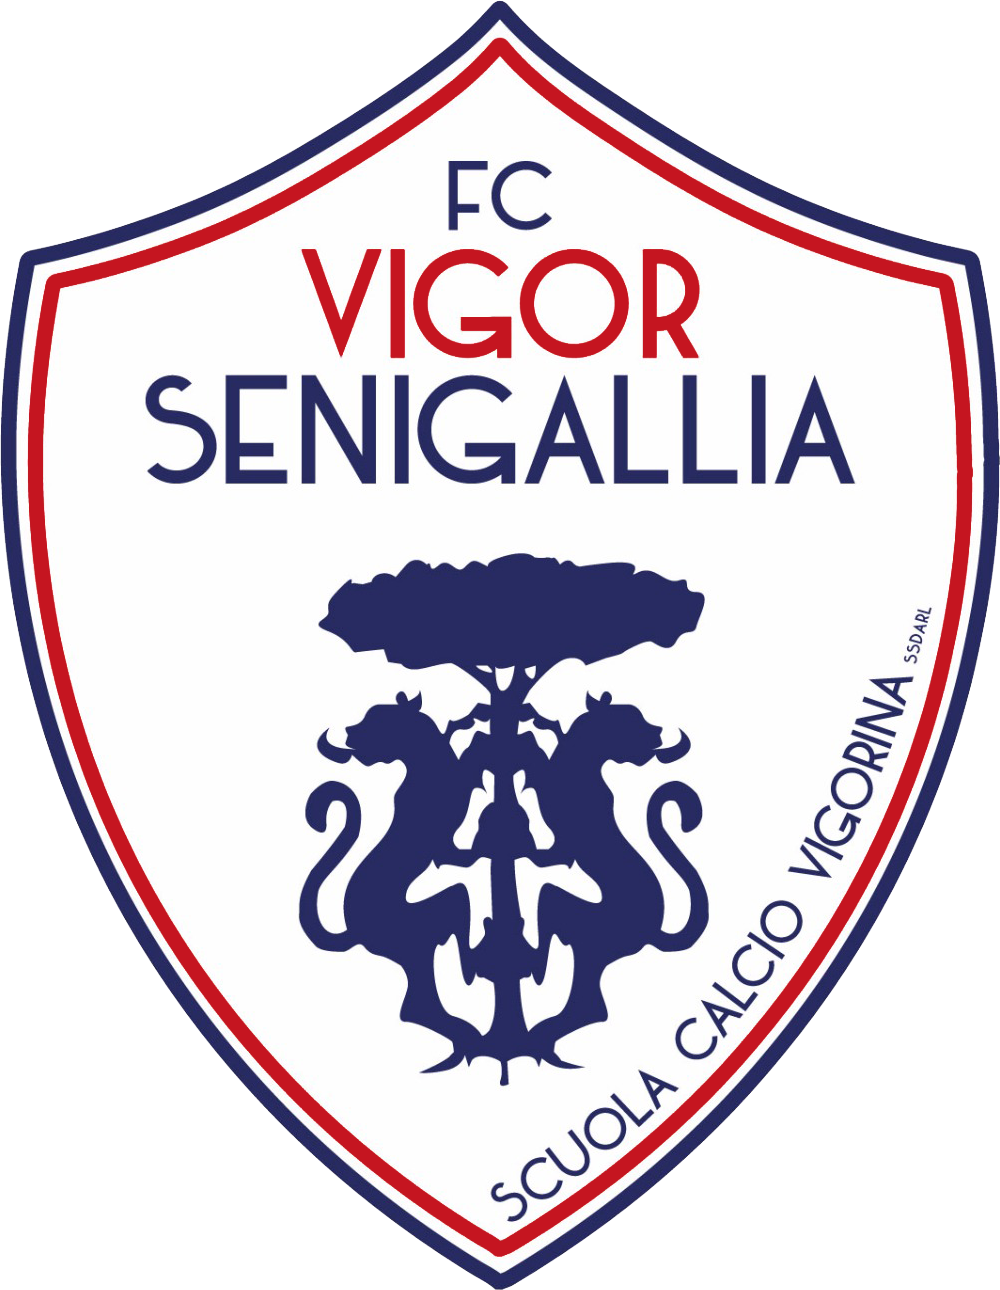 VIGOR SENIGALLIA